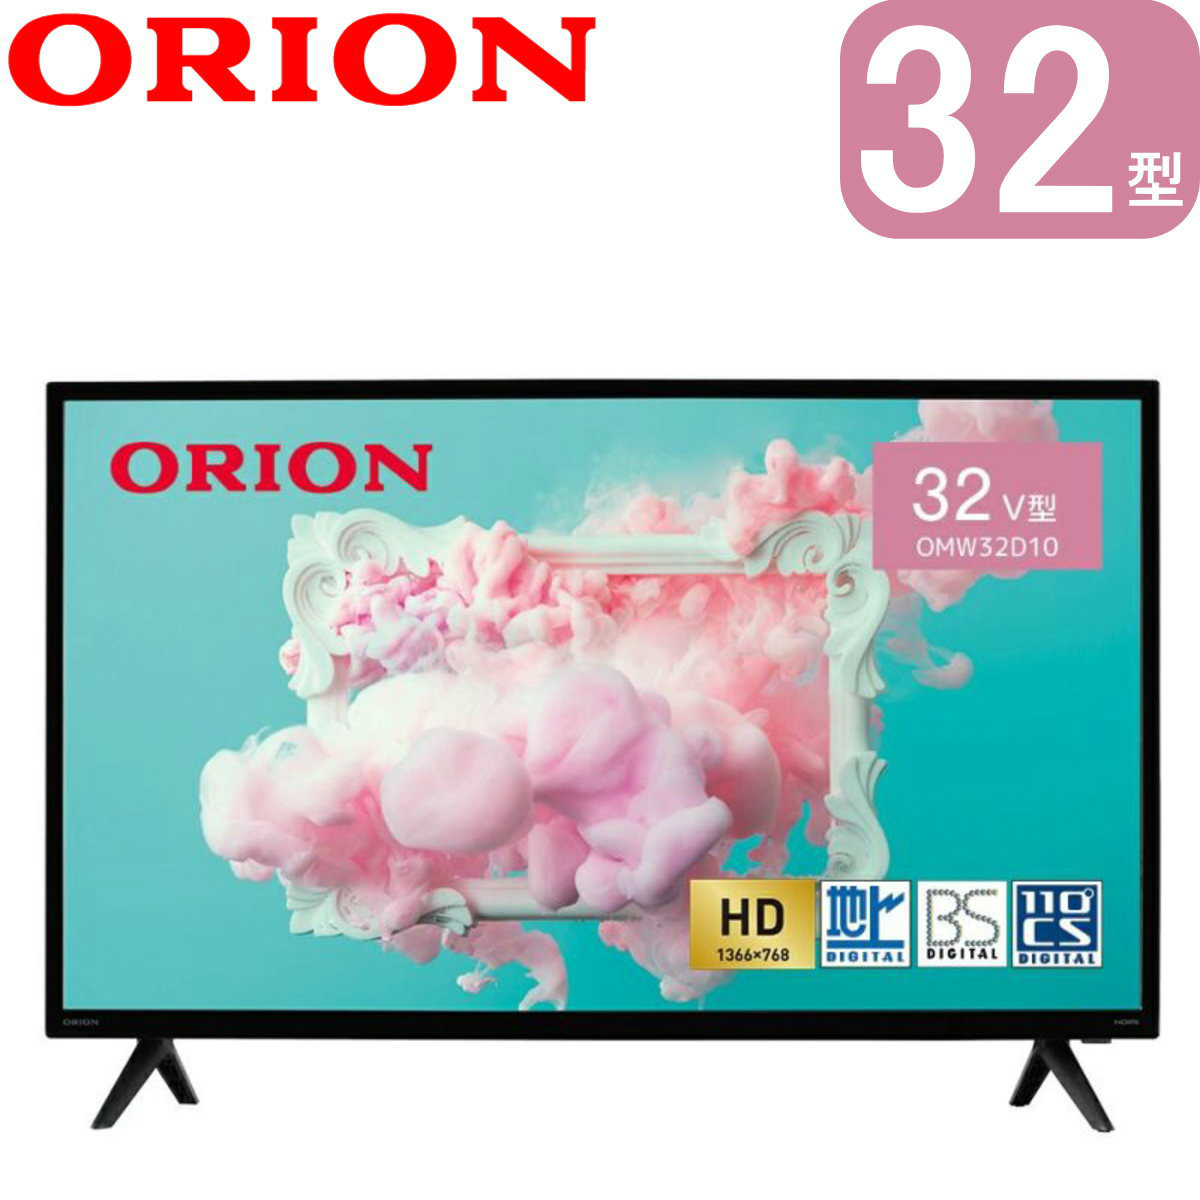 ORION 32v型 ハイビジョン液晶テレビ OMW32D10 | USBハードディスク 